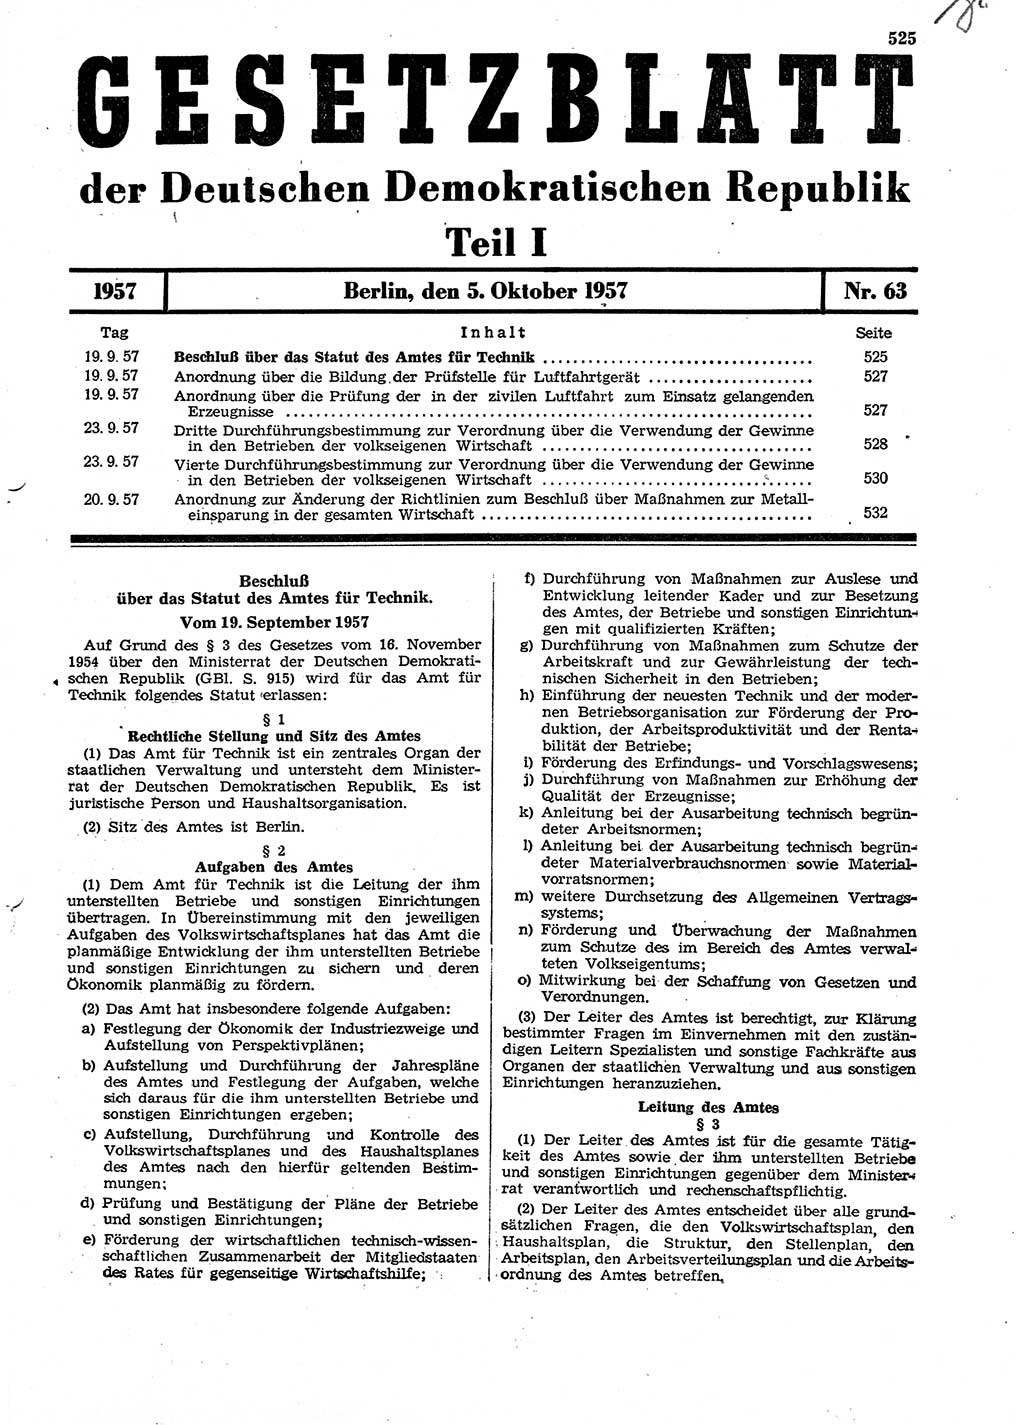 Gesetzblatt (GBl.) der Deutschen Demokratischen Republik (DDR) Teil Ⅰ 1957, Seite 525 (GBl. DDR Ⅰ 1957, S. 525)